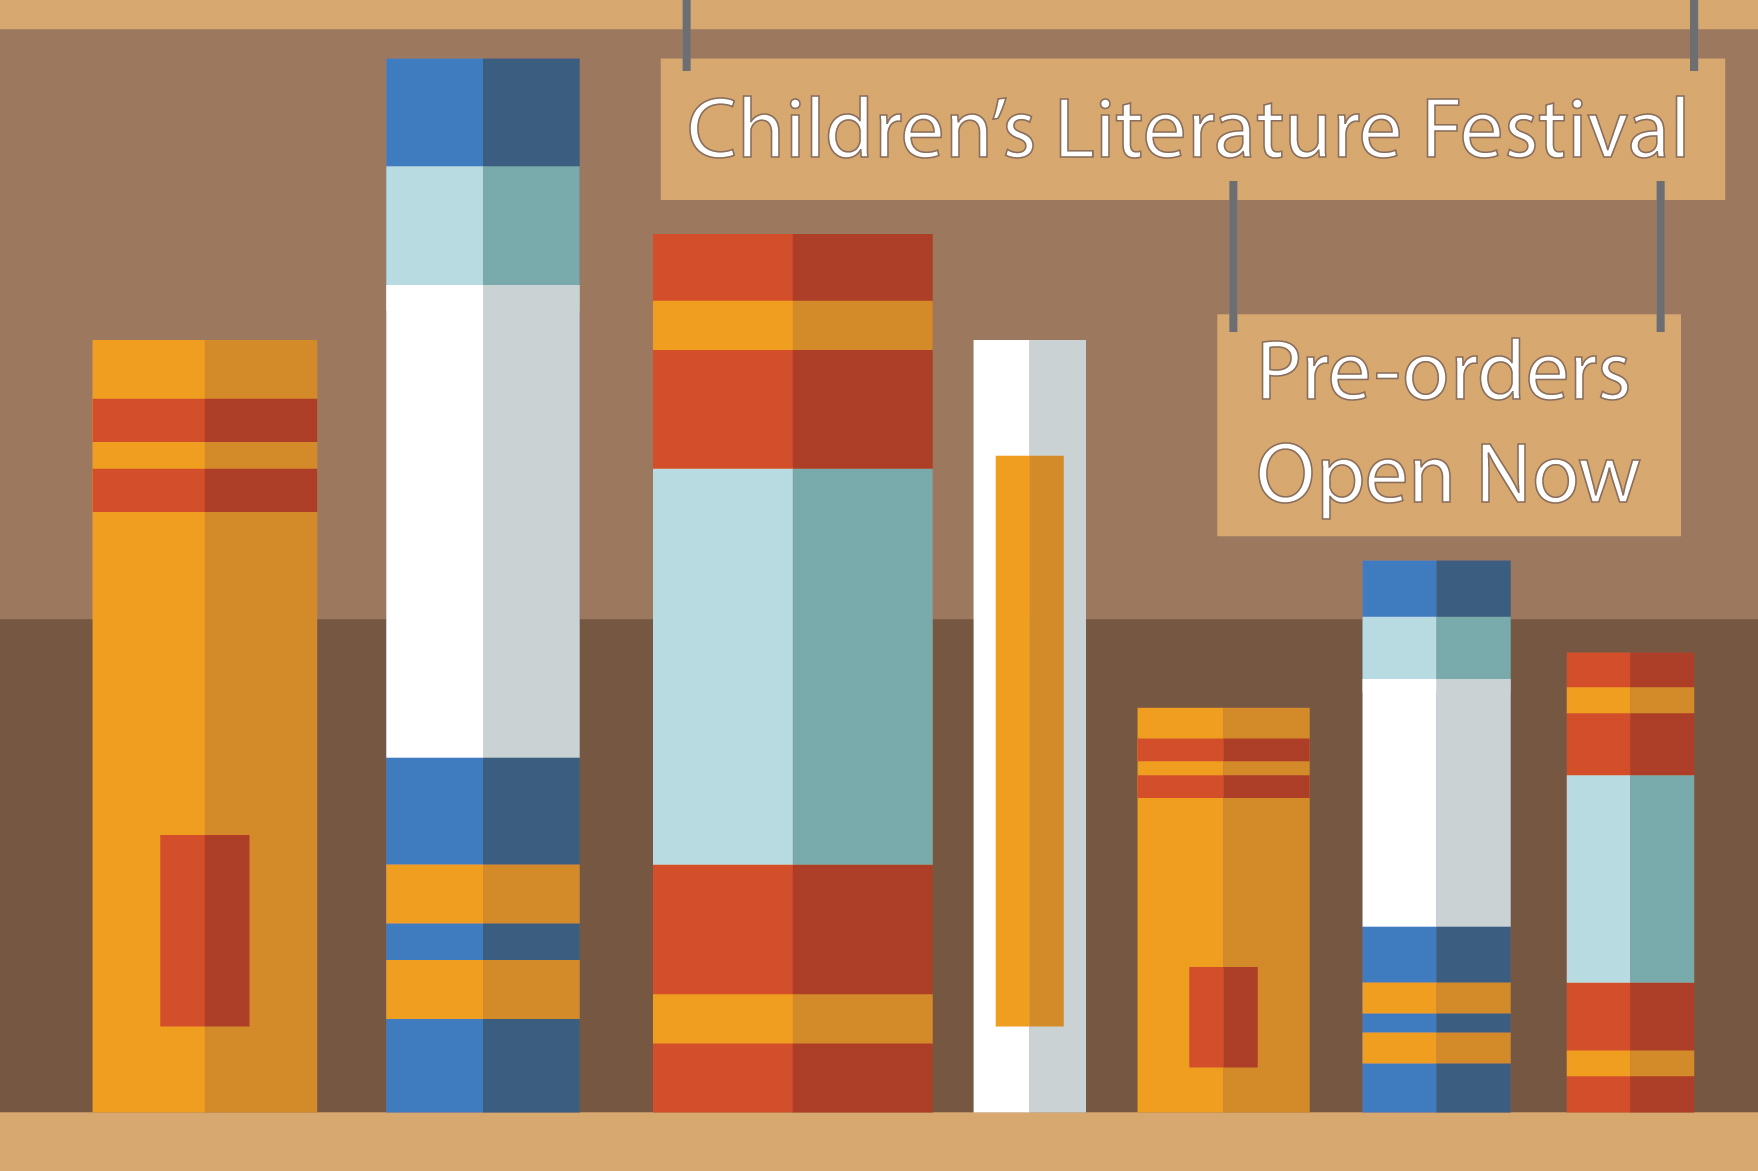 Children's Literature Festival Pre-orders Open Now.